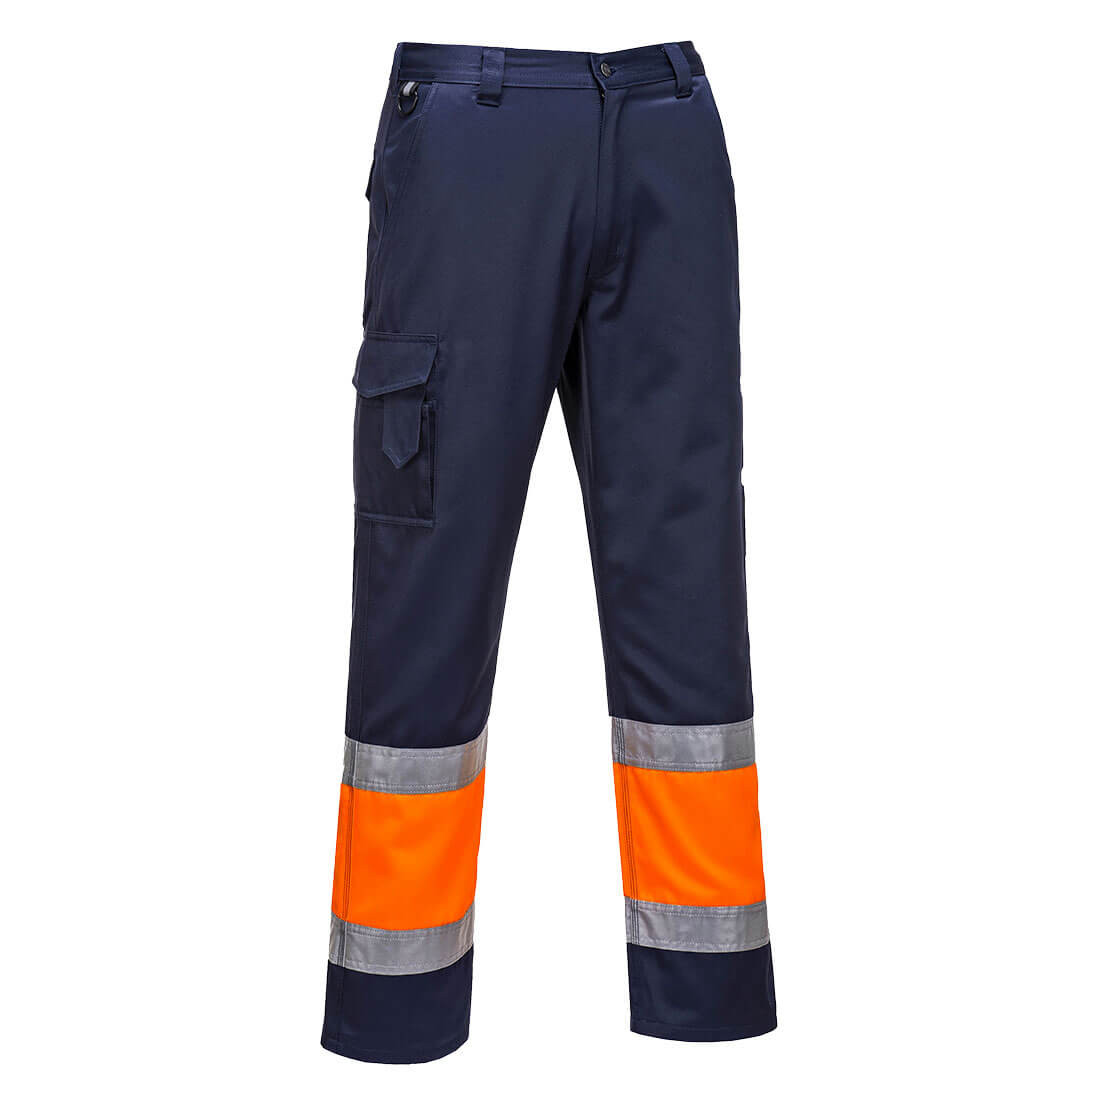 Pantaloni alta visibilità leggeri bicolore Combat - Abbigliamento di protezione